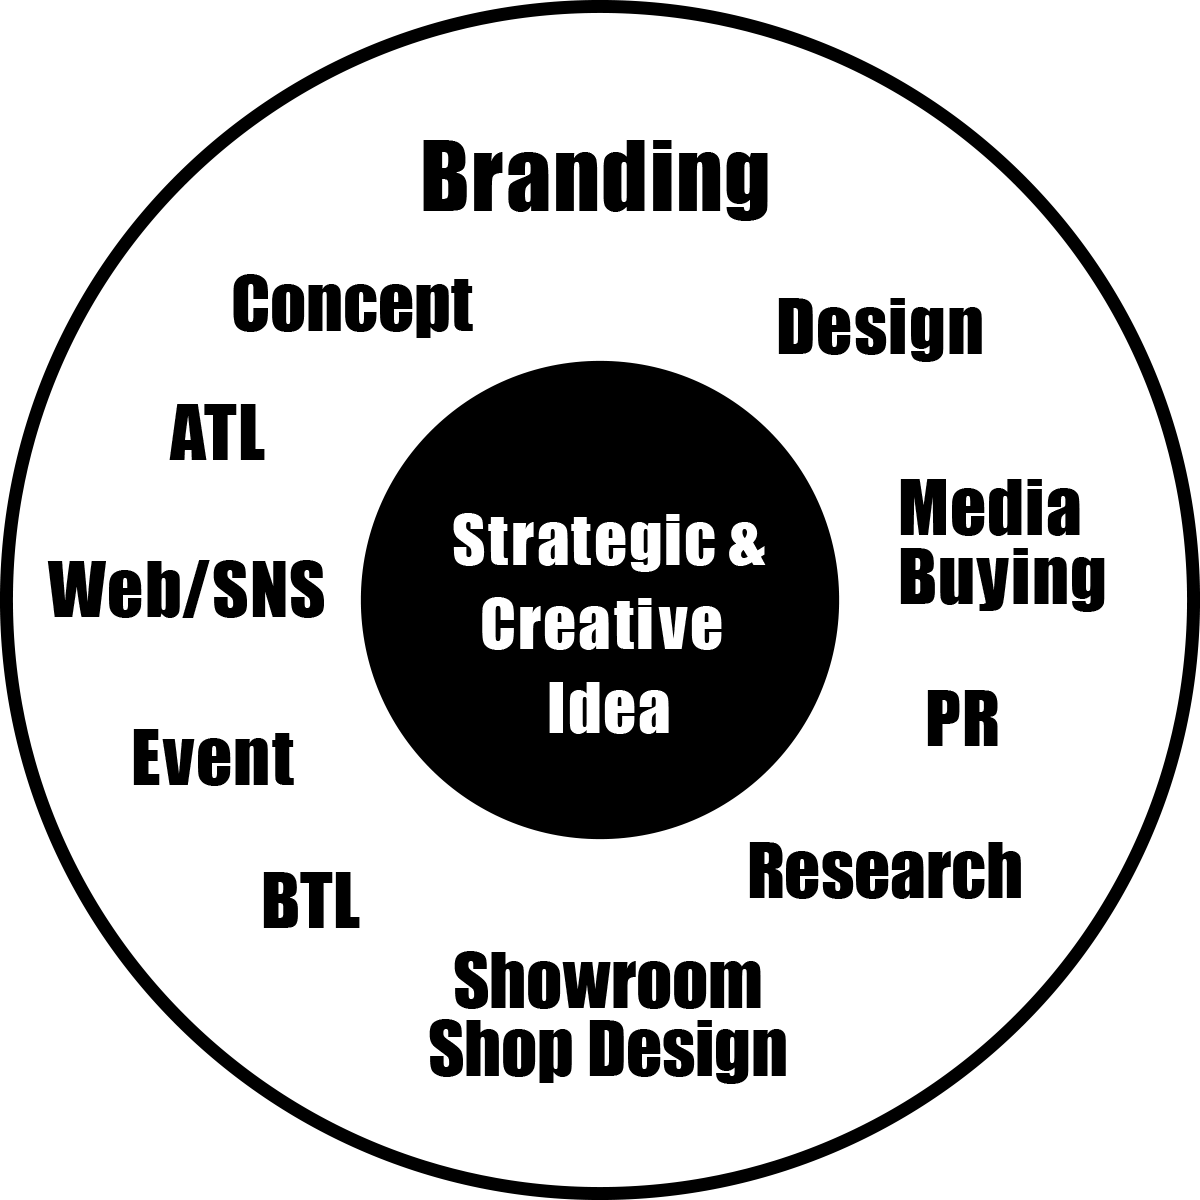 Strategic & Creative Idea